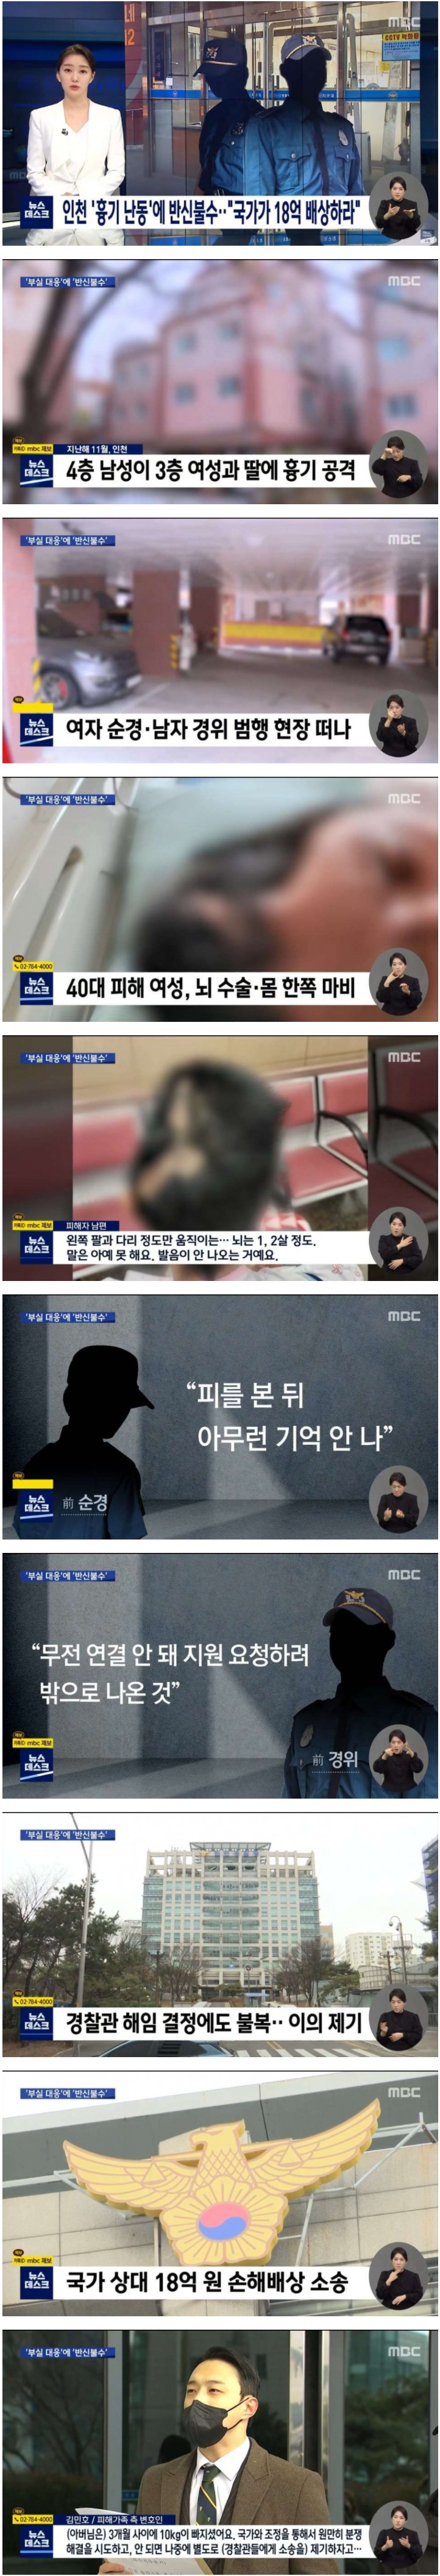 인천 흉기 난동 사건 피해자 국가에 18억 배상 소송